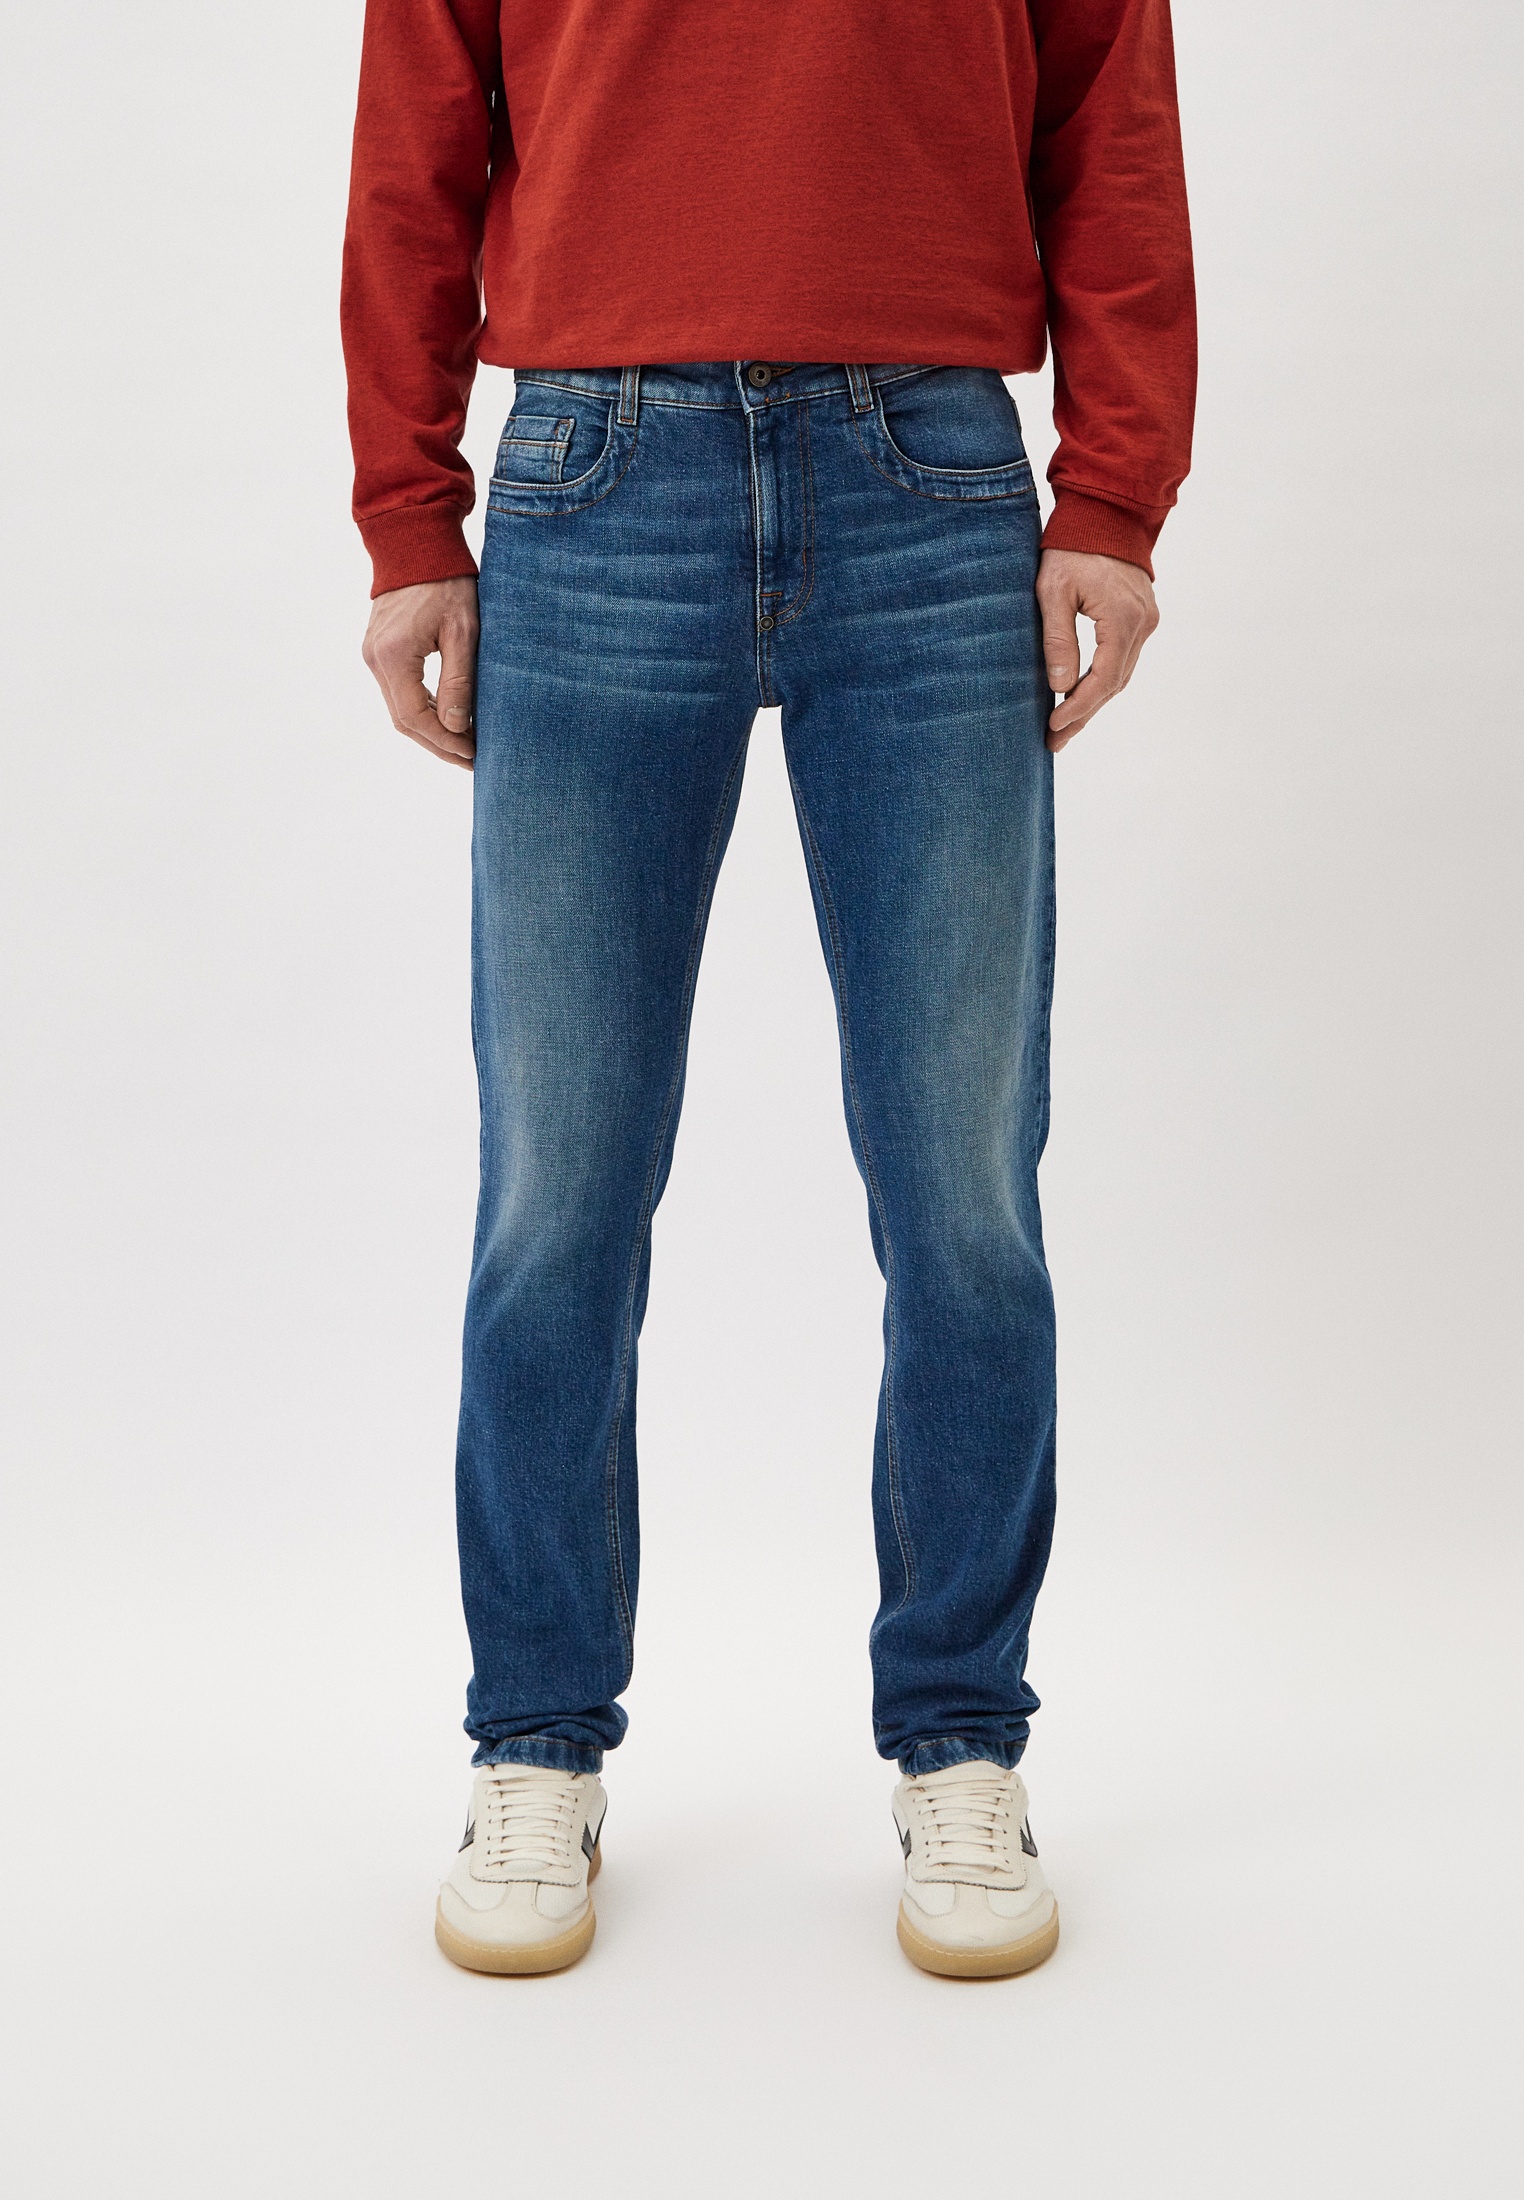 Мужские зауженные джинсы Bikkembergs (Биккембергс) CQ1011XS3976: изображение 1